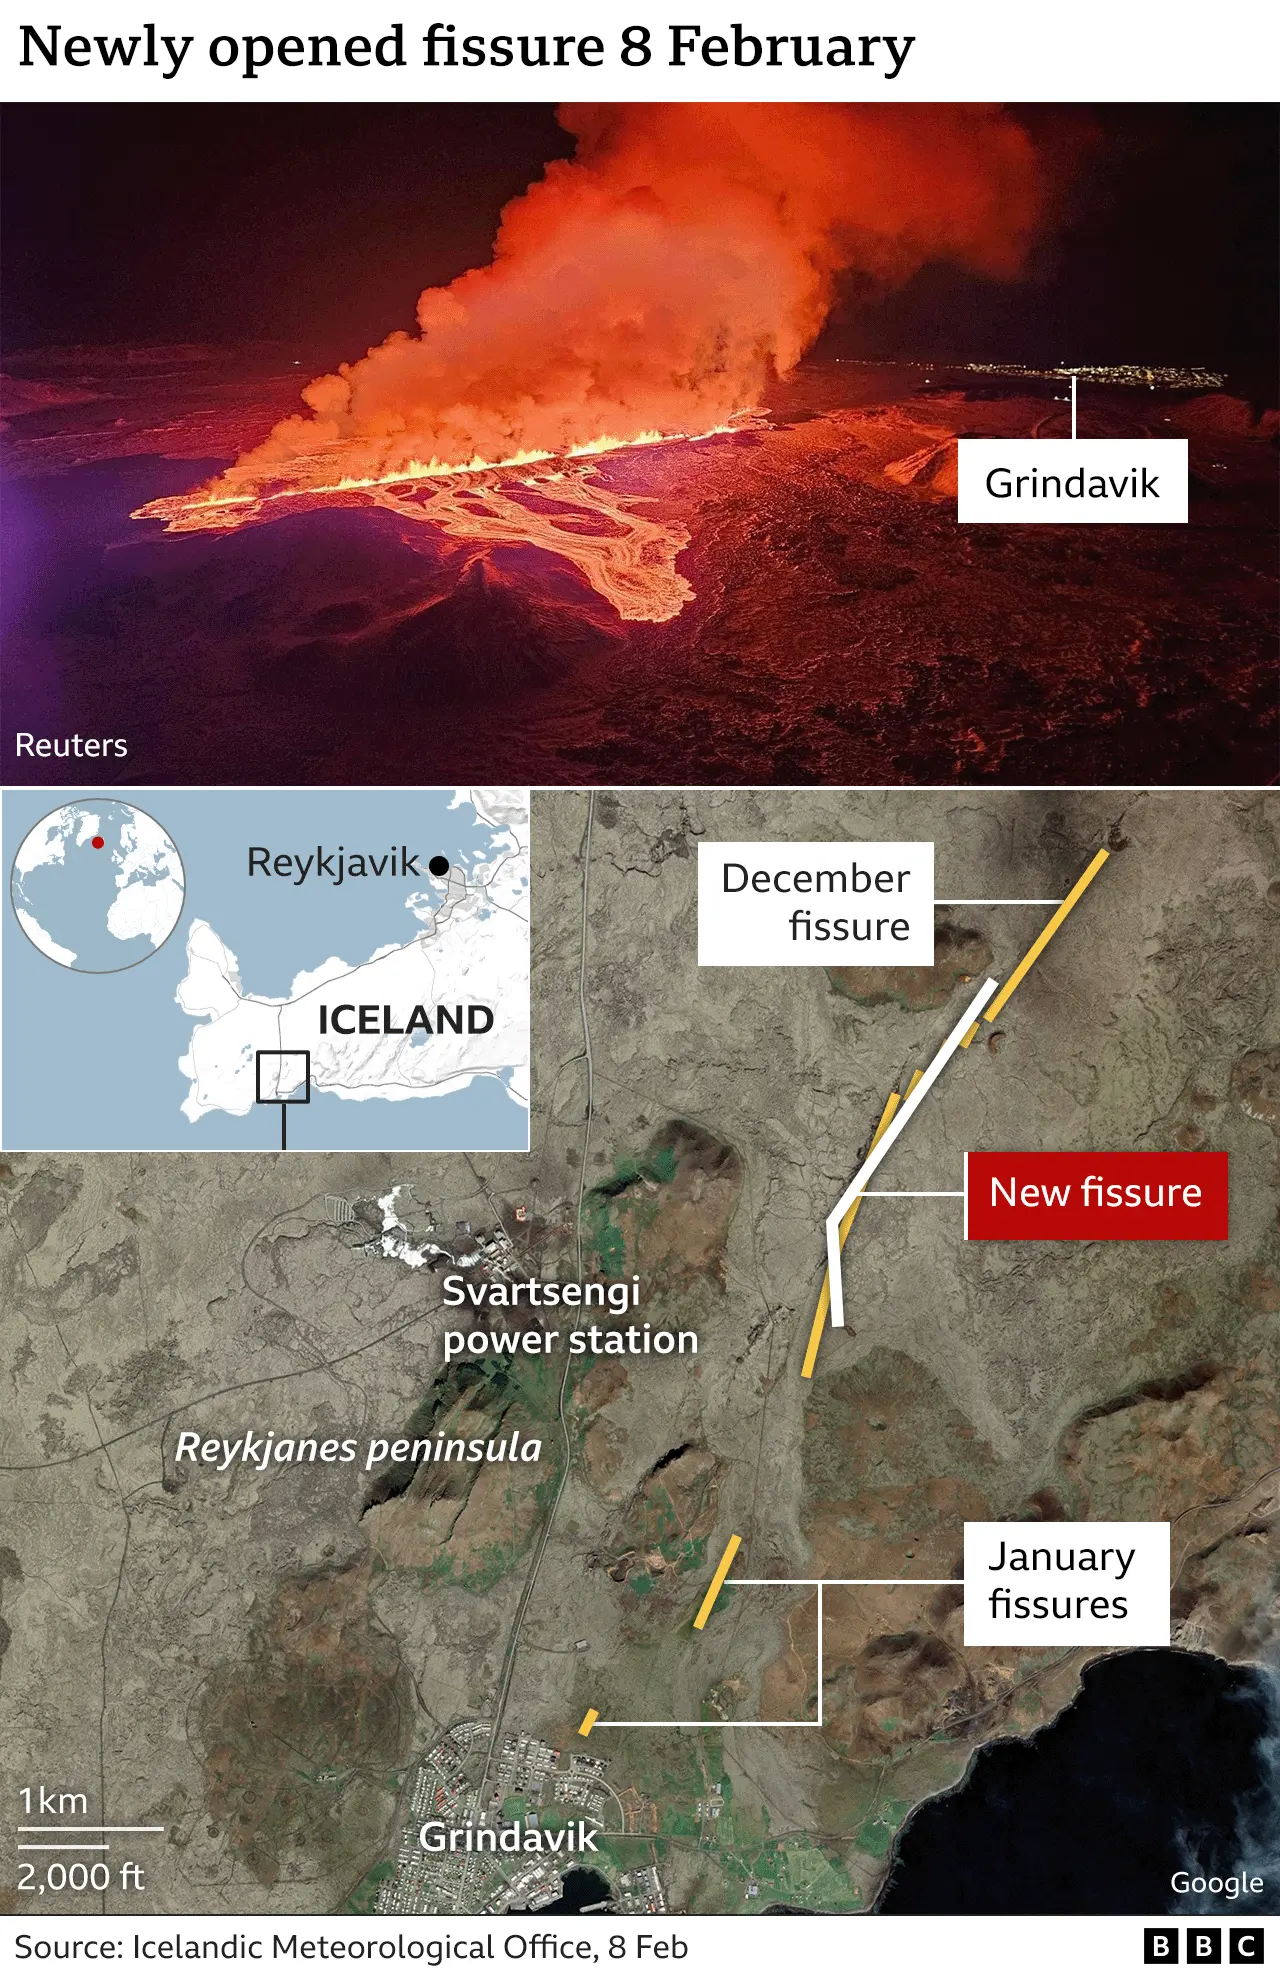 Un gráfico conjunto de la BBC con imágenes satelitales y filmaciones aéreas que ilustran cómo se abrieron nuevas fisuras en la península de Reykjavík en Islandia en diciembre y enero.